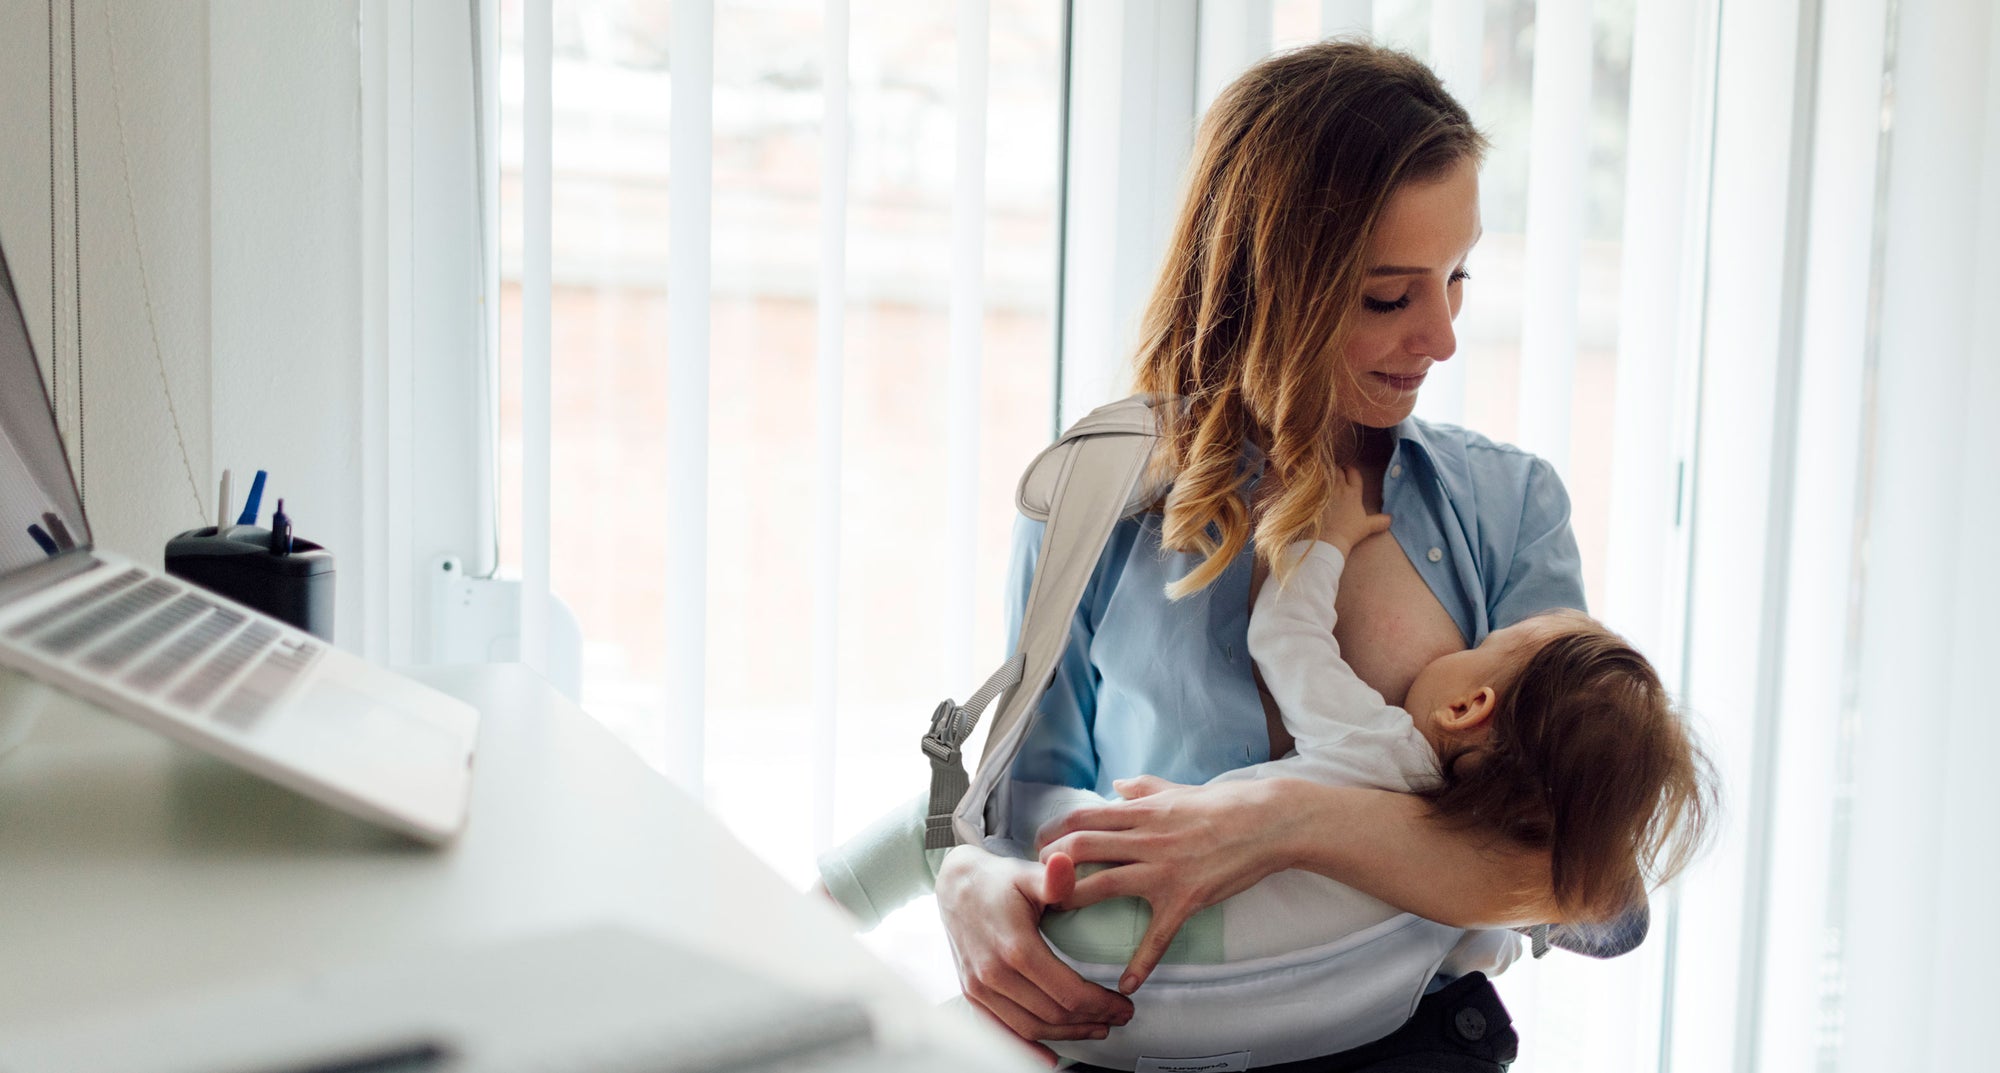 Working mom in office is nursing her baby in Pick-Me-Up nurse sling